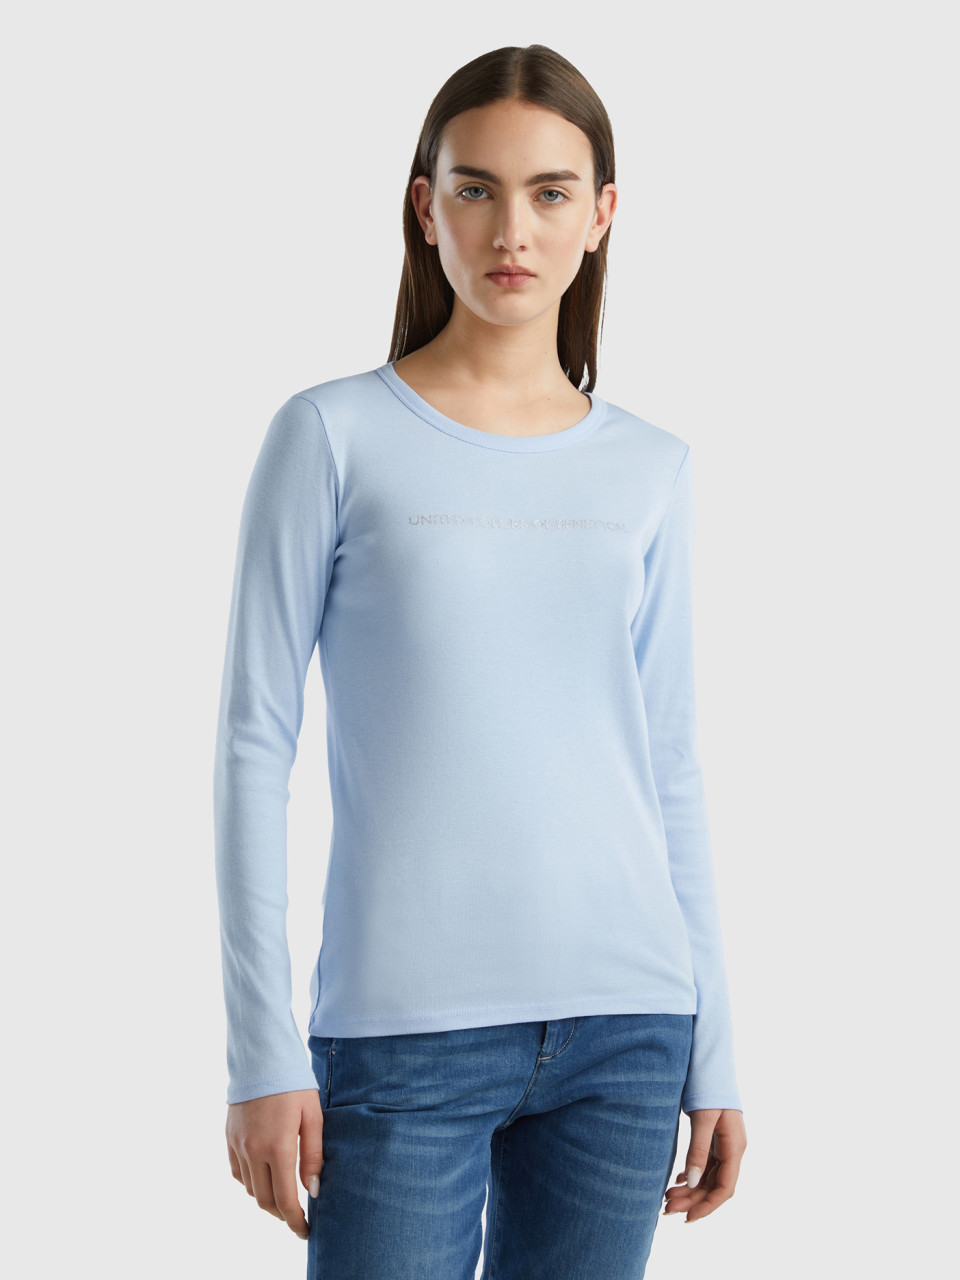 Benetton, Light Blue 100% Cotton Long Sleeve T-shirt, Sky Blue, Women